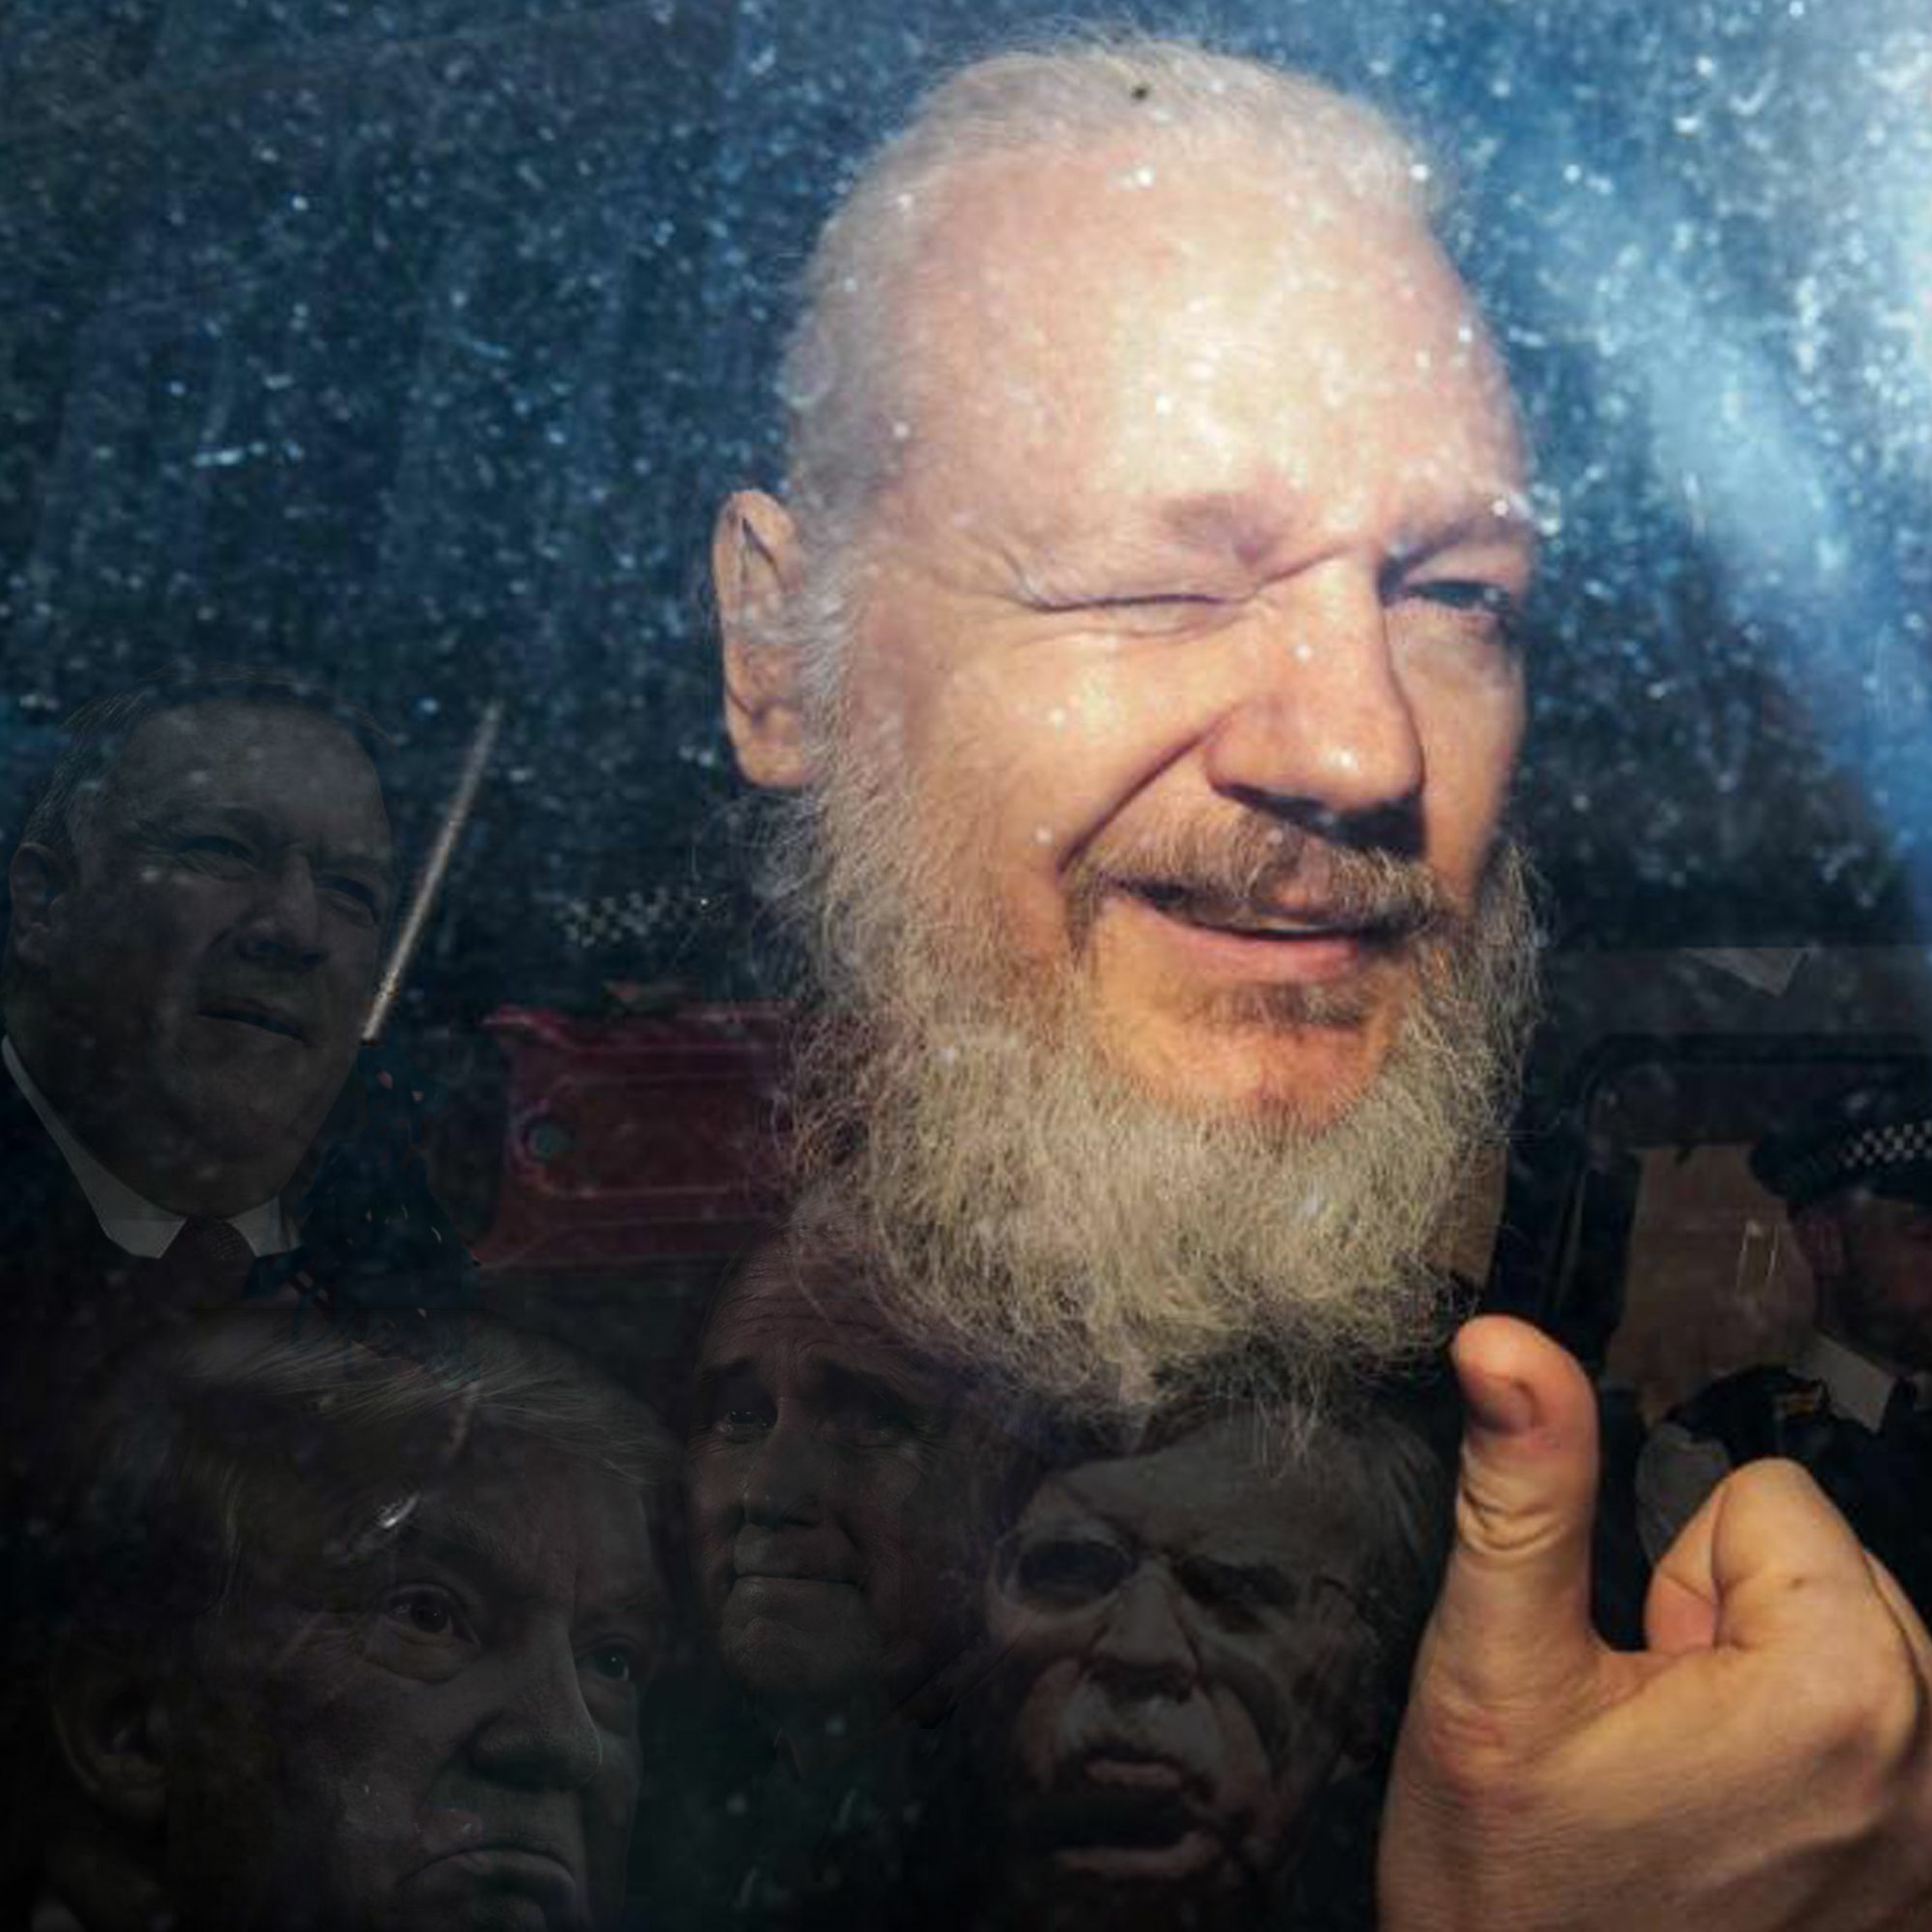 Julian Assange Arrest, Wikileaks & Implications for Press Freedom